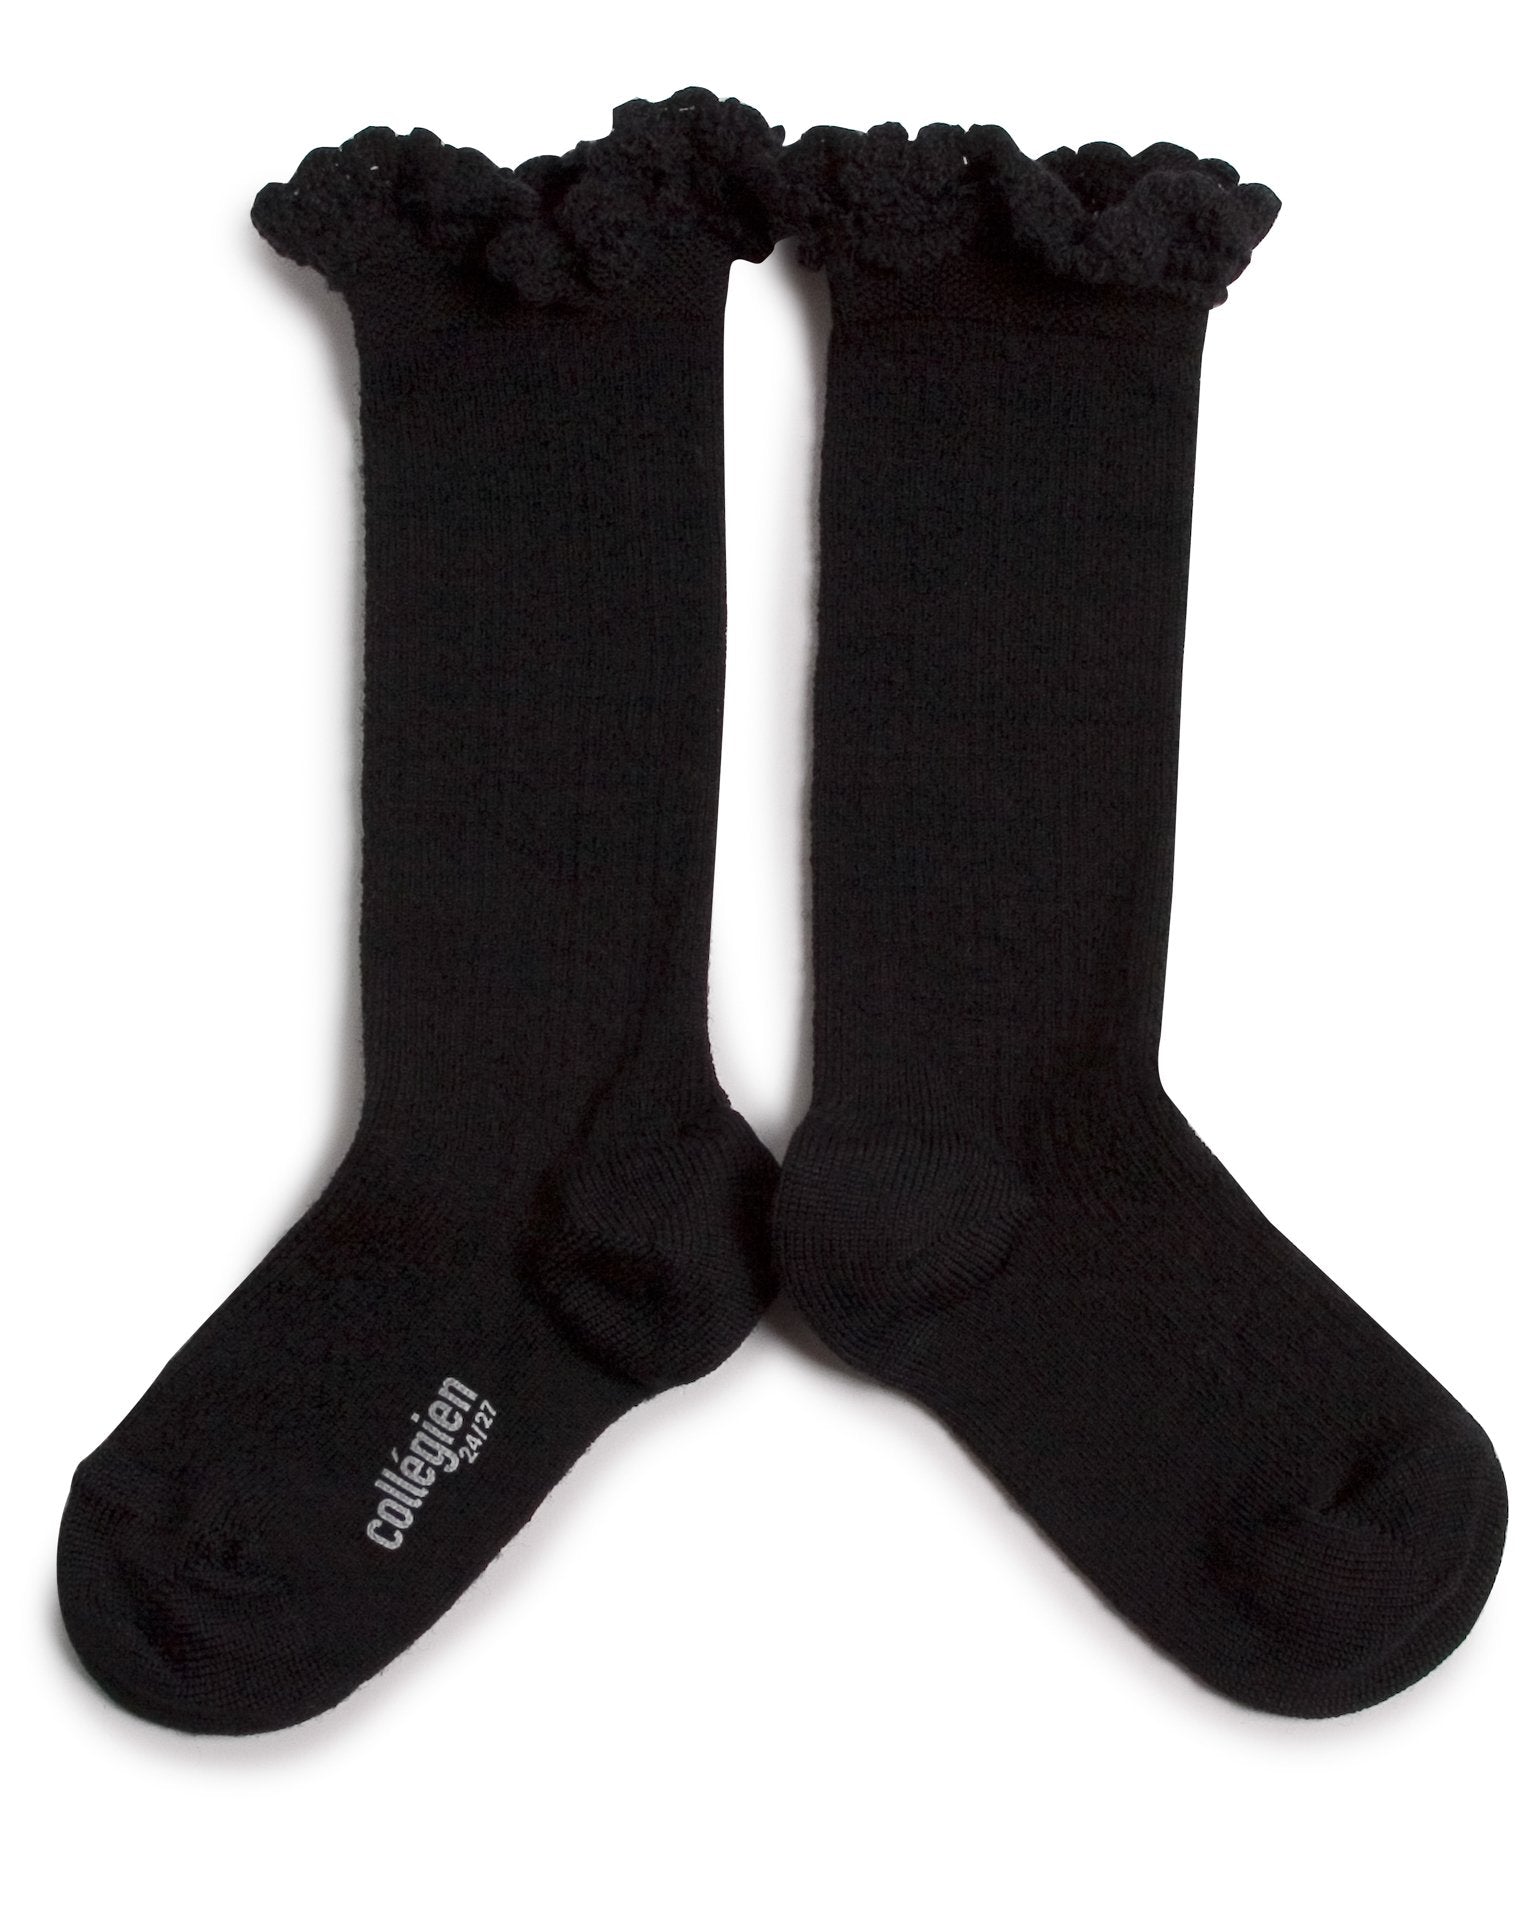 Little collegien accessories adeline knee socks in noir de charbon